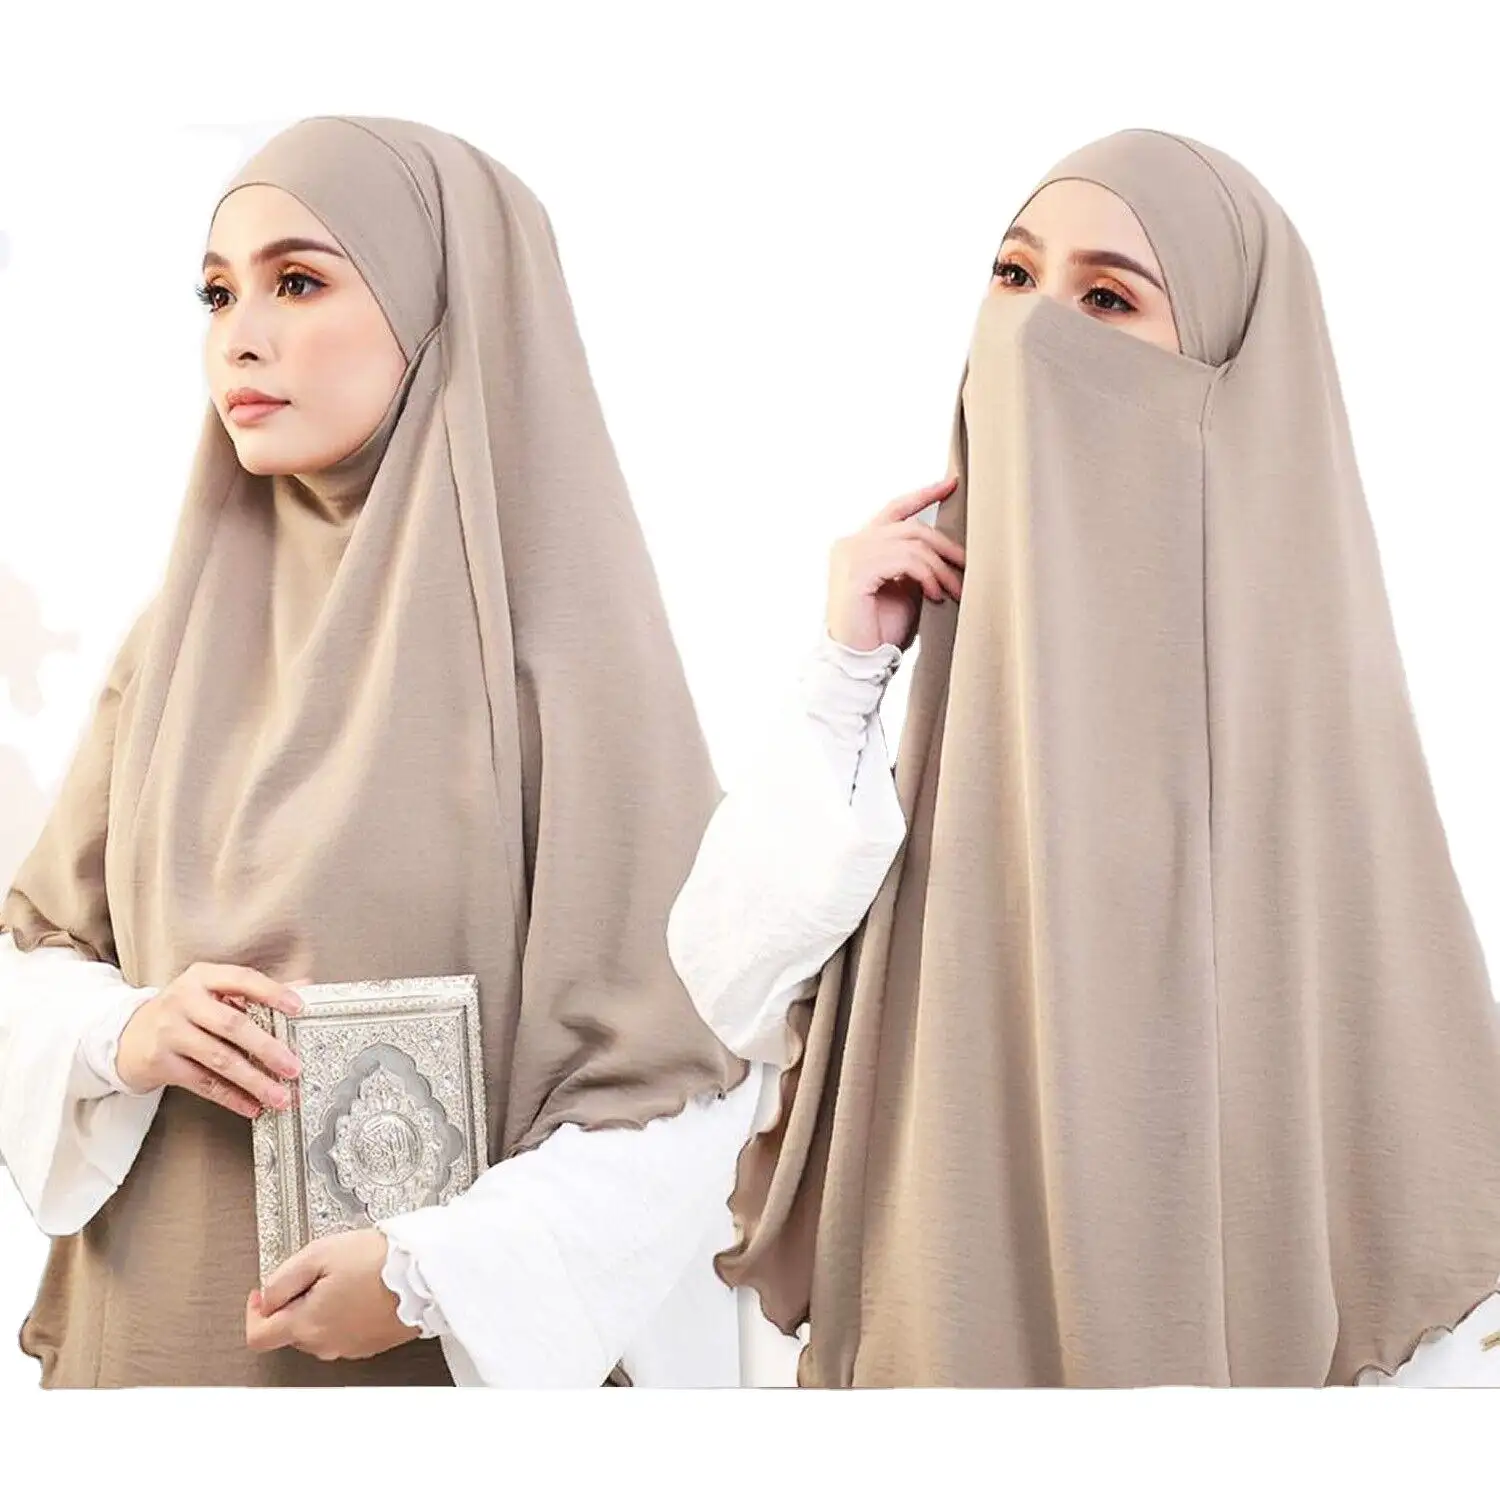 Yüksek kaliteli düz renk rahat yumuşak inci şifon bayanlar şal tasarım aksesuar kadınlar müslüman eşarp anında başörtüsü